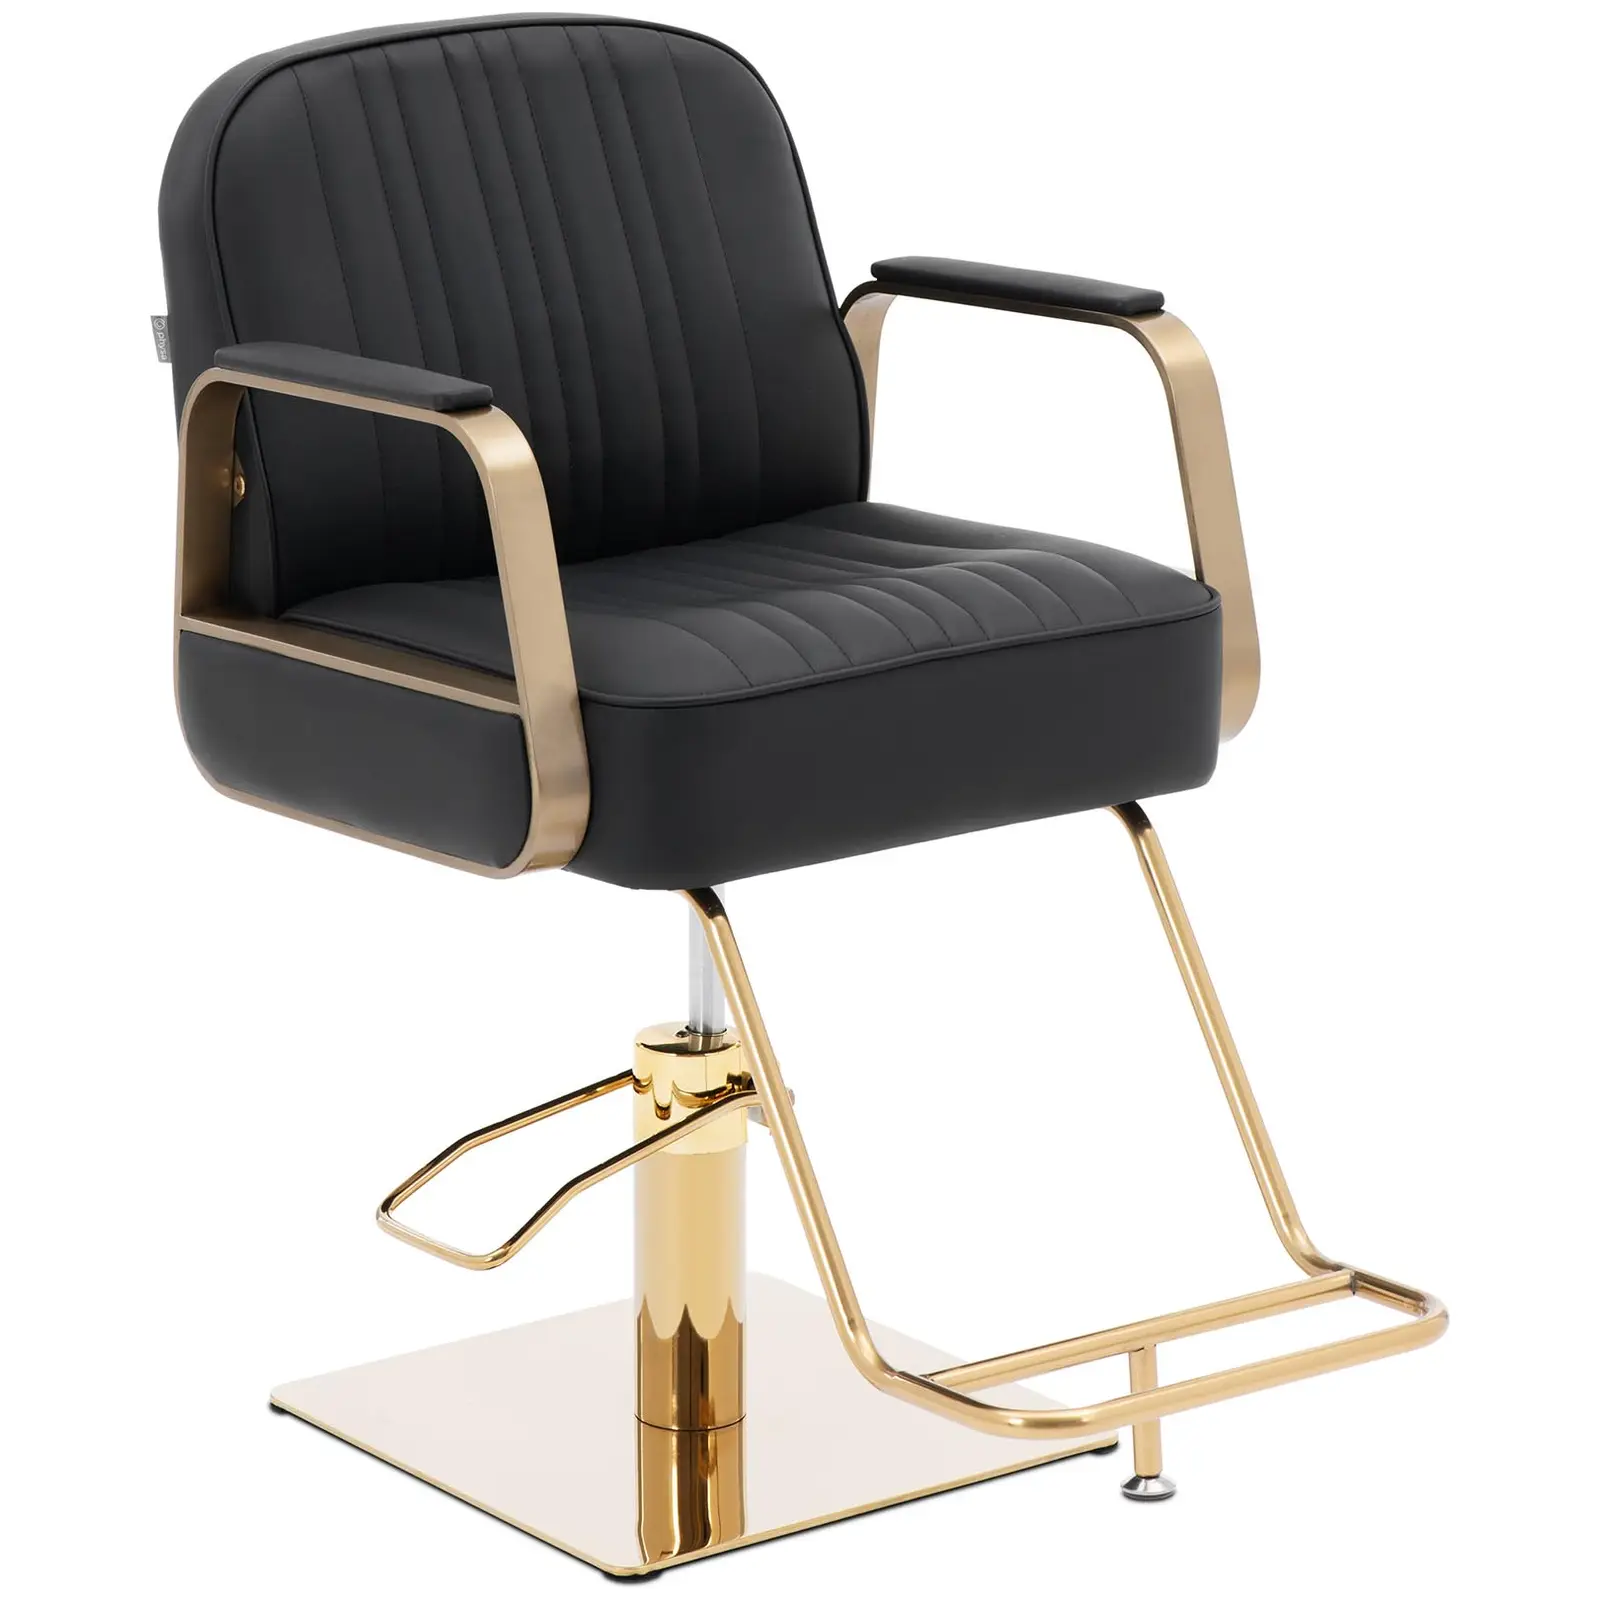 Salono kėdė su atramomis kojoms - 920 - 1070 mm - 200 kg - juoda / auksinė